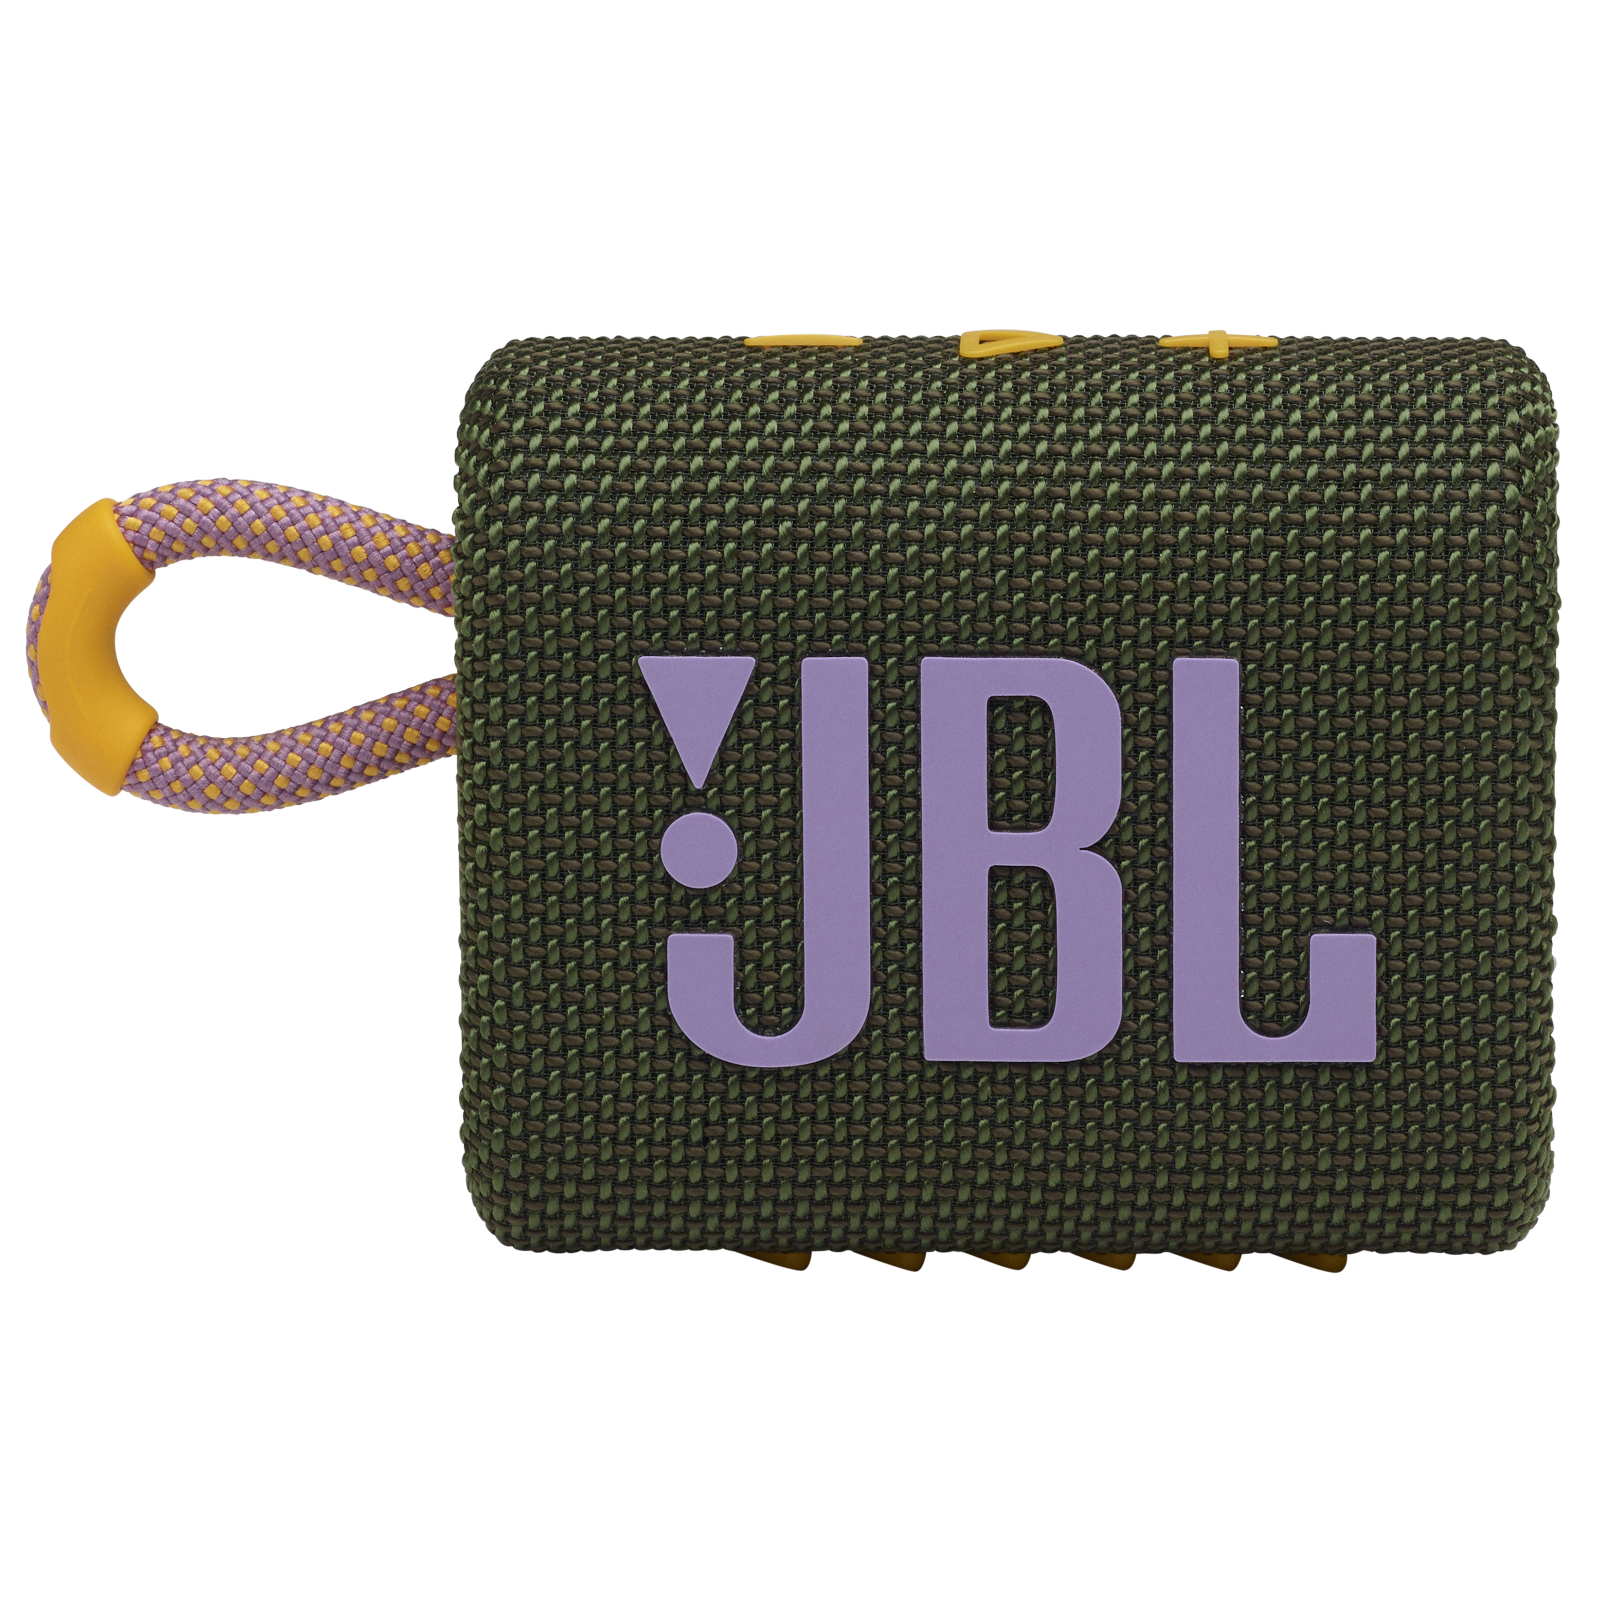 JBL Go 3 - Green - Portable Waterproof Speaker - Front